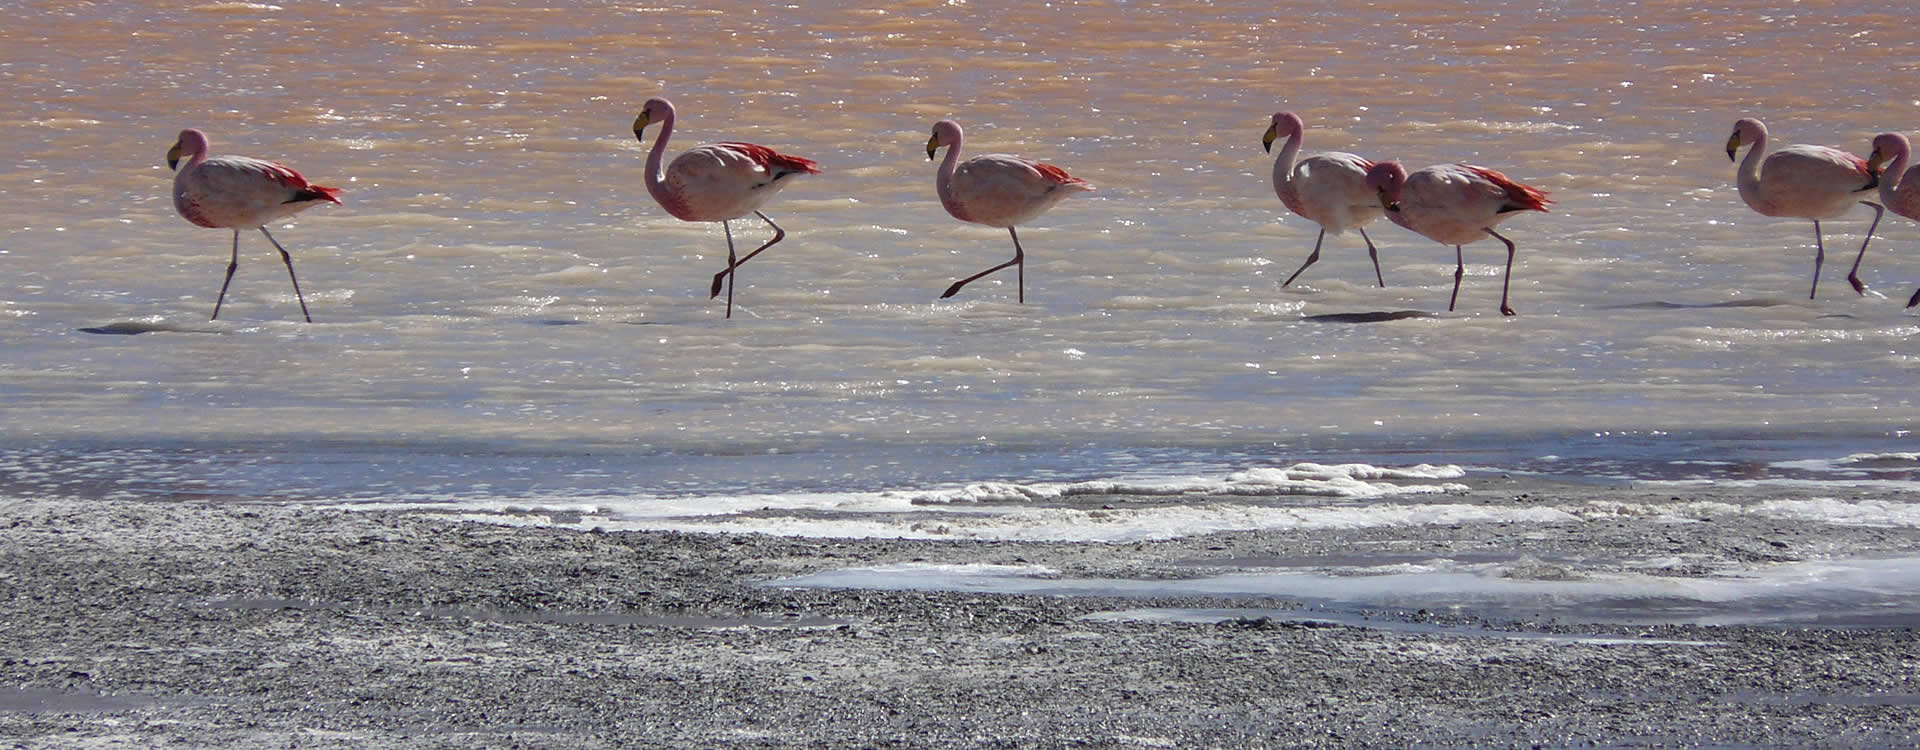 Flamingos in Uyuni